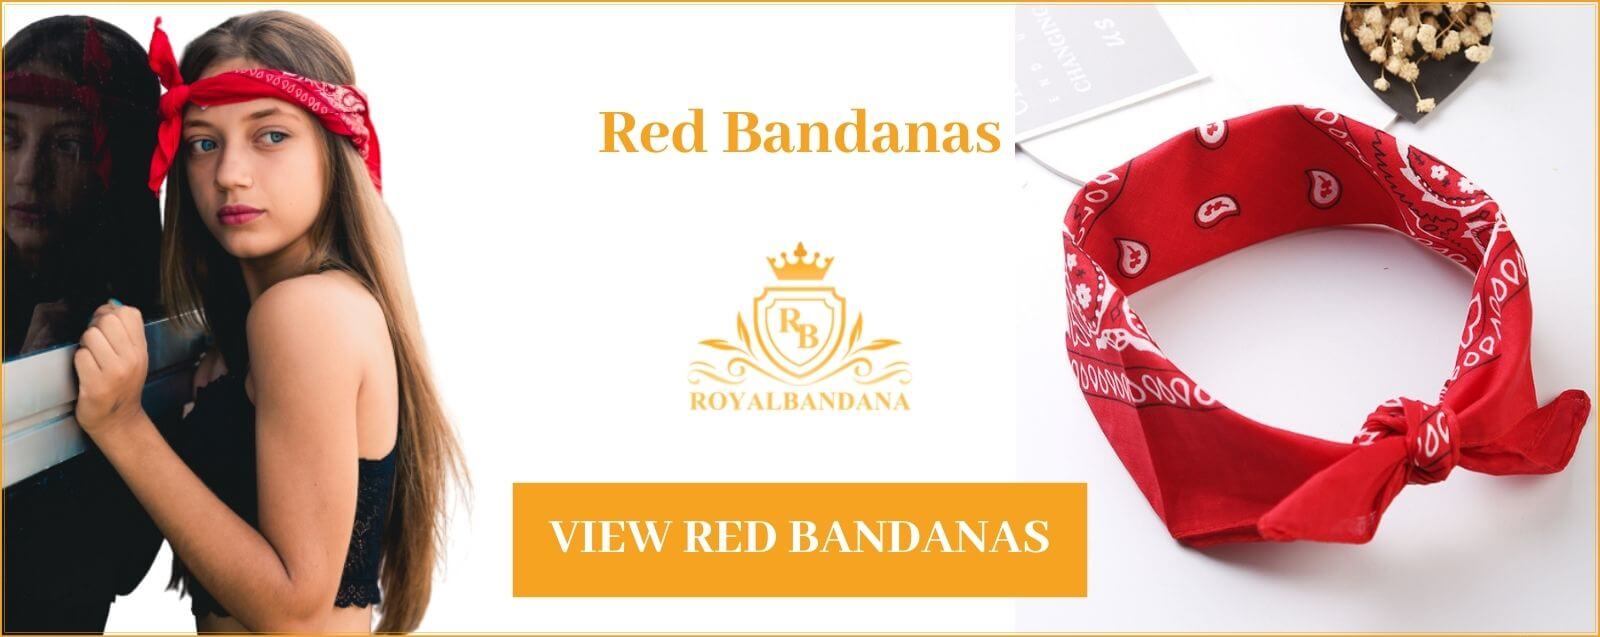 buy-bandana-red-woman-royalbandana